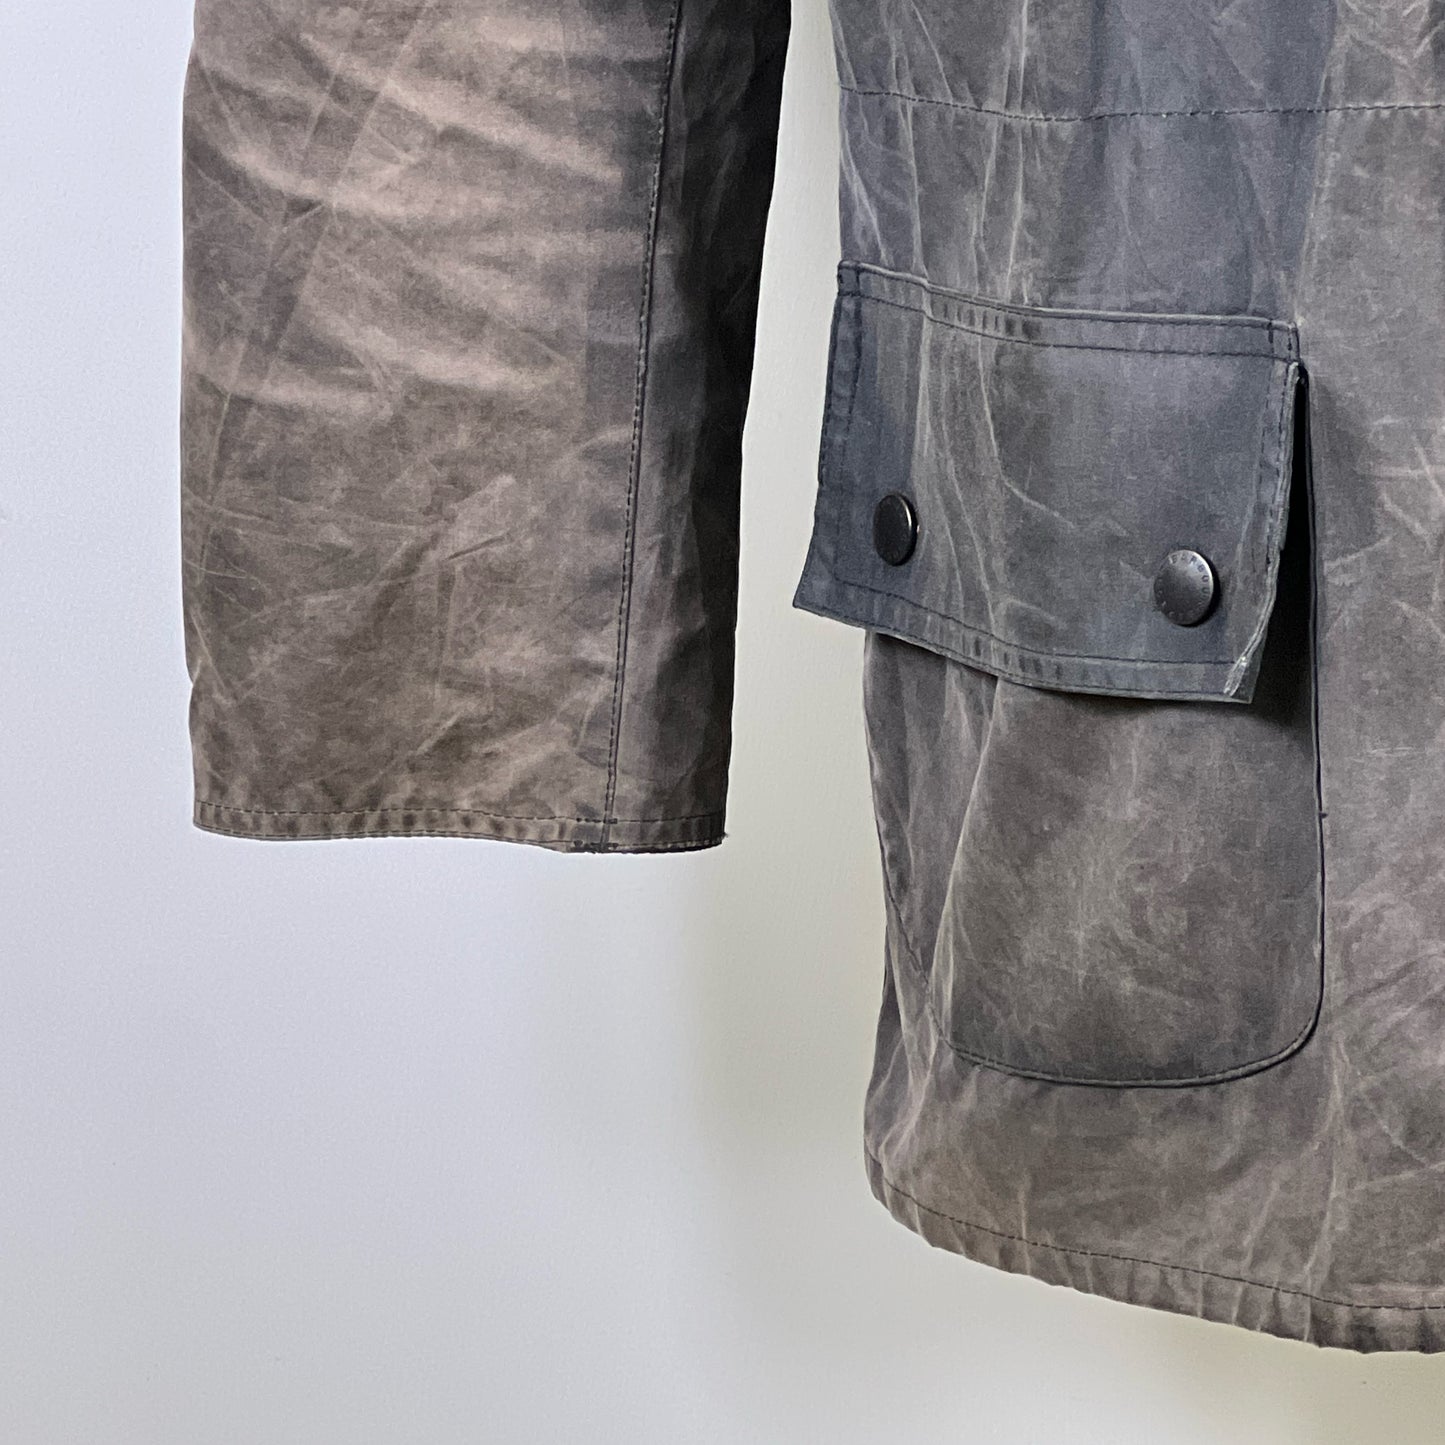 RARA Barbour Giacca Cowen Commando Grigio c36/91 cm Grey wax Man Jacket size S